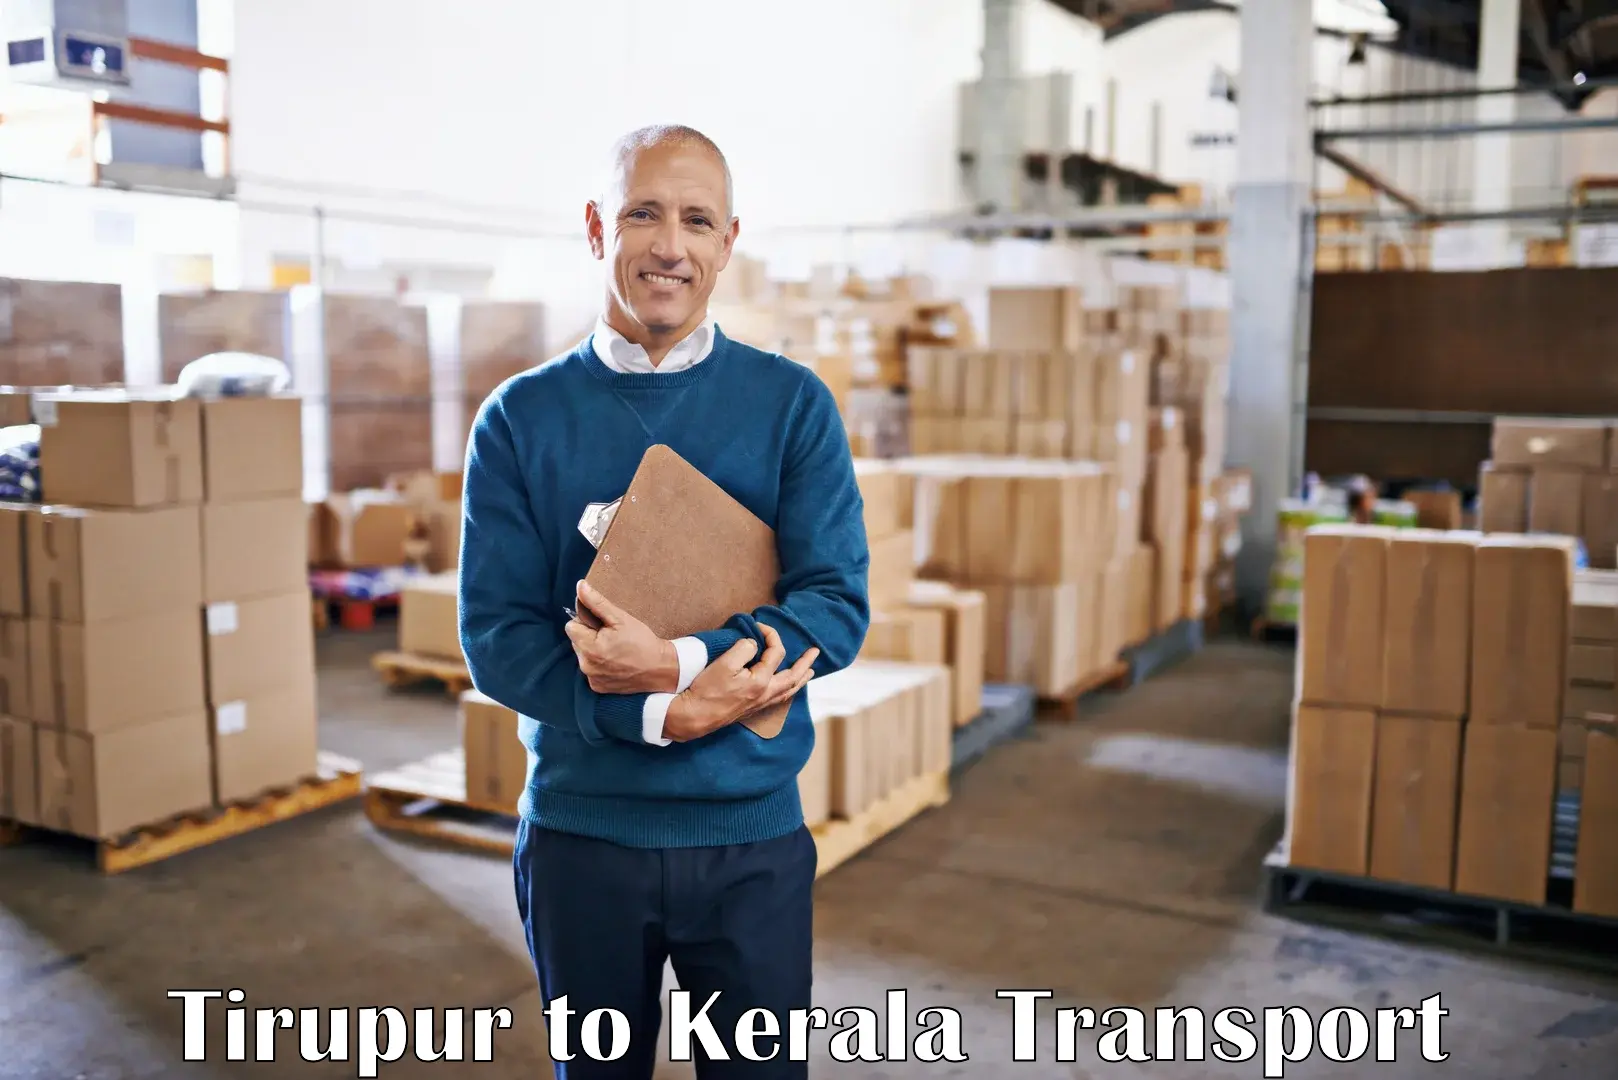 Online transport service Tirupur to Kallikkad